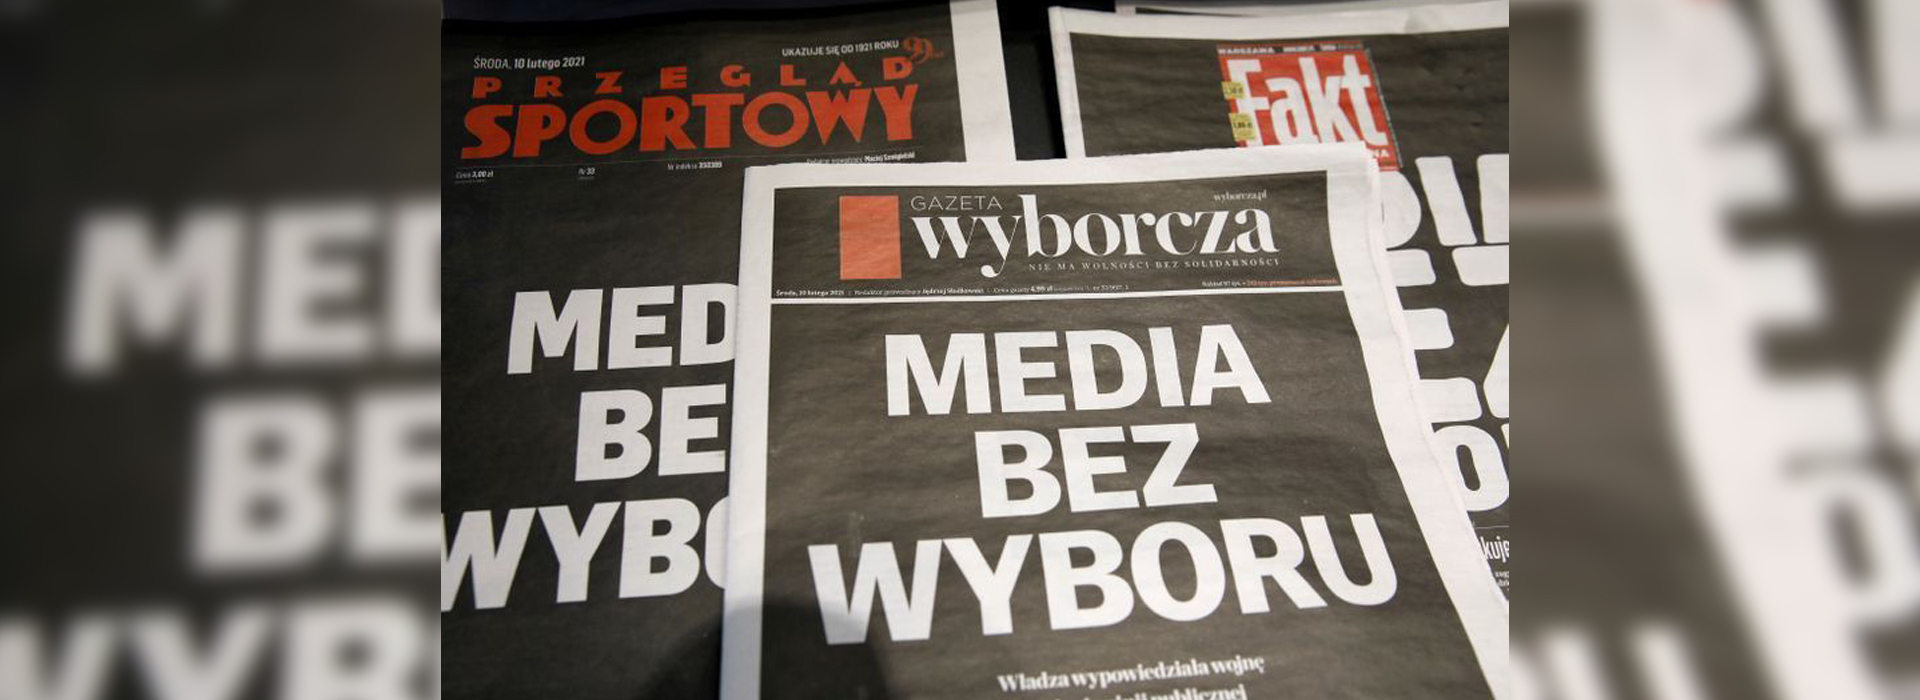 Новий податок на рекламу викликав великі протести з боку польських медіа